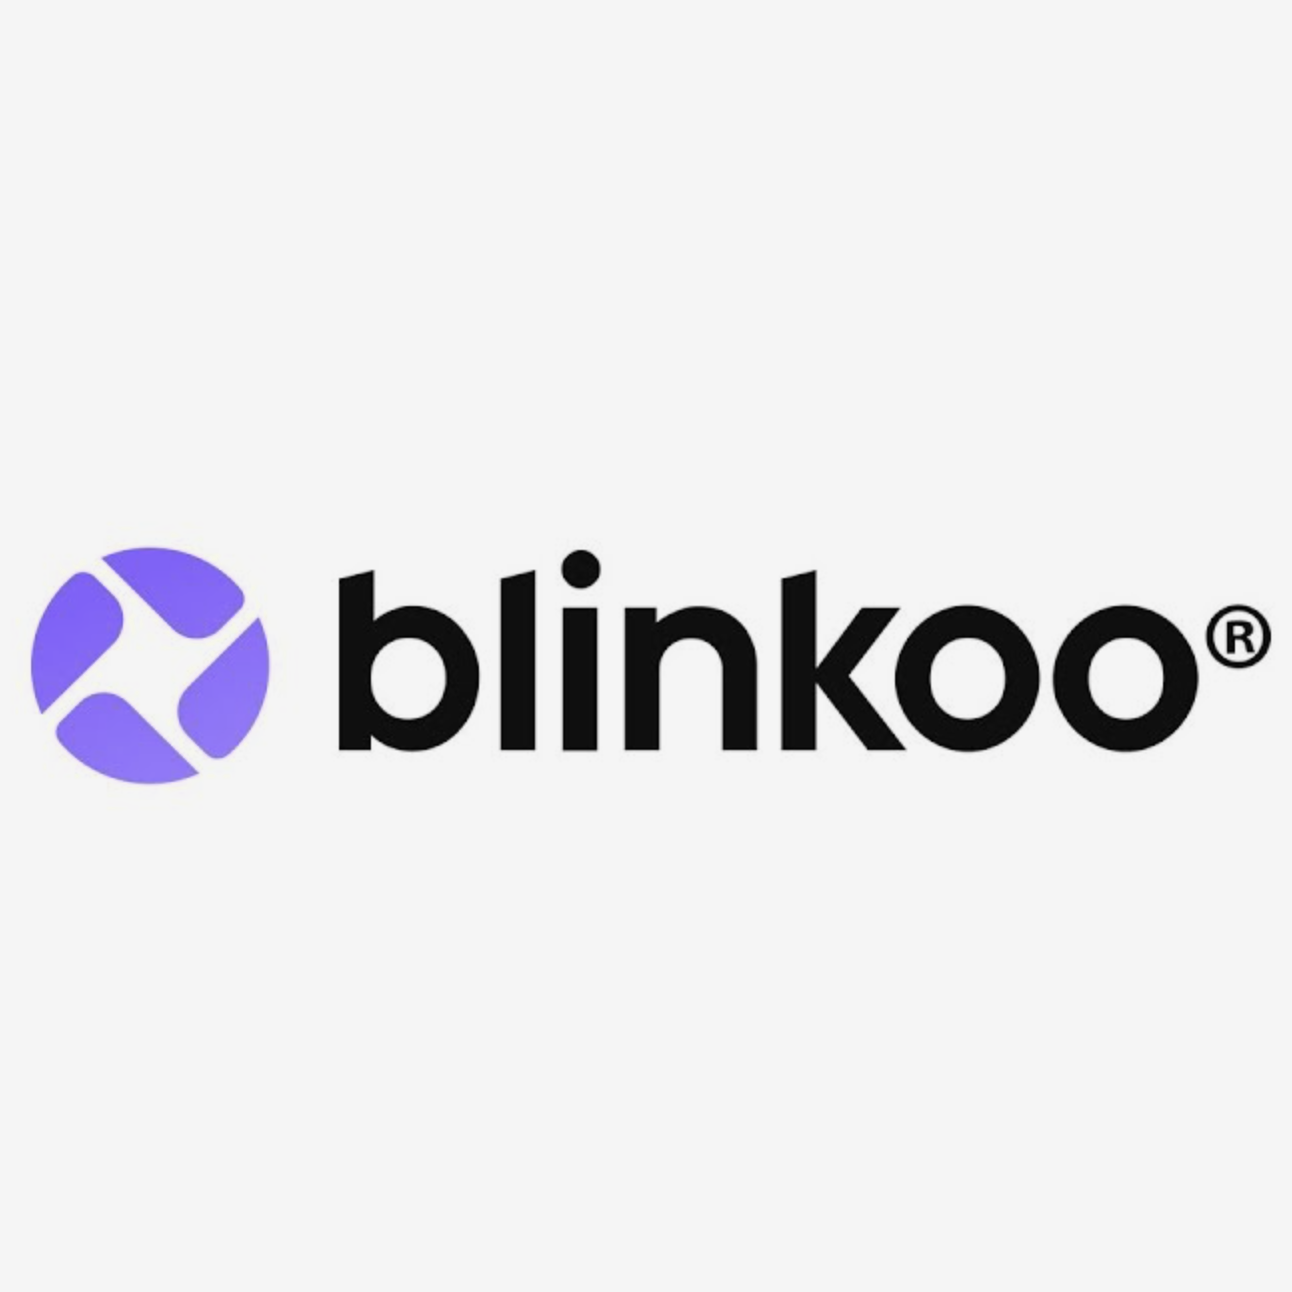 blinkoo_partner